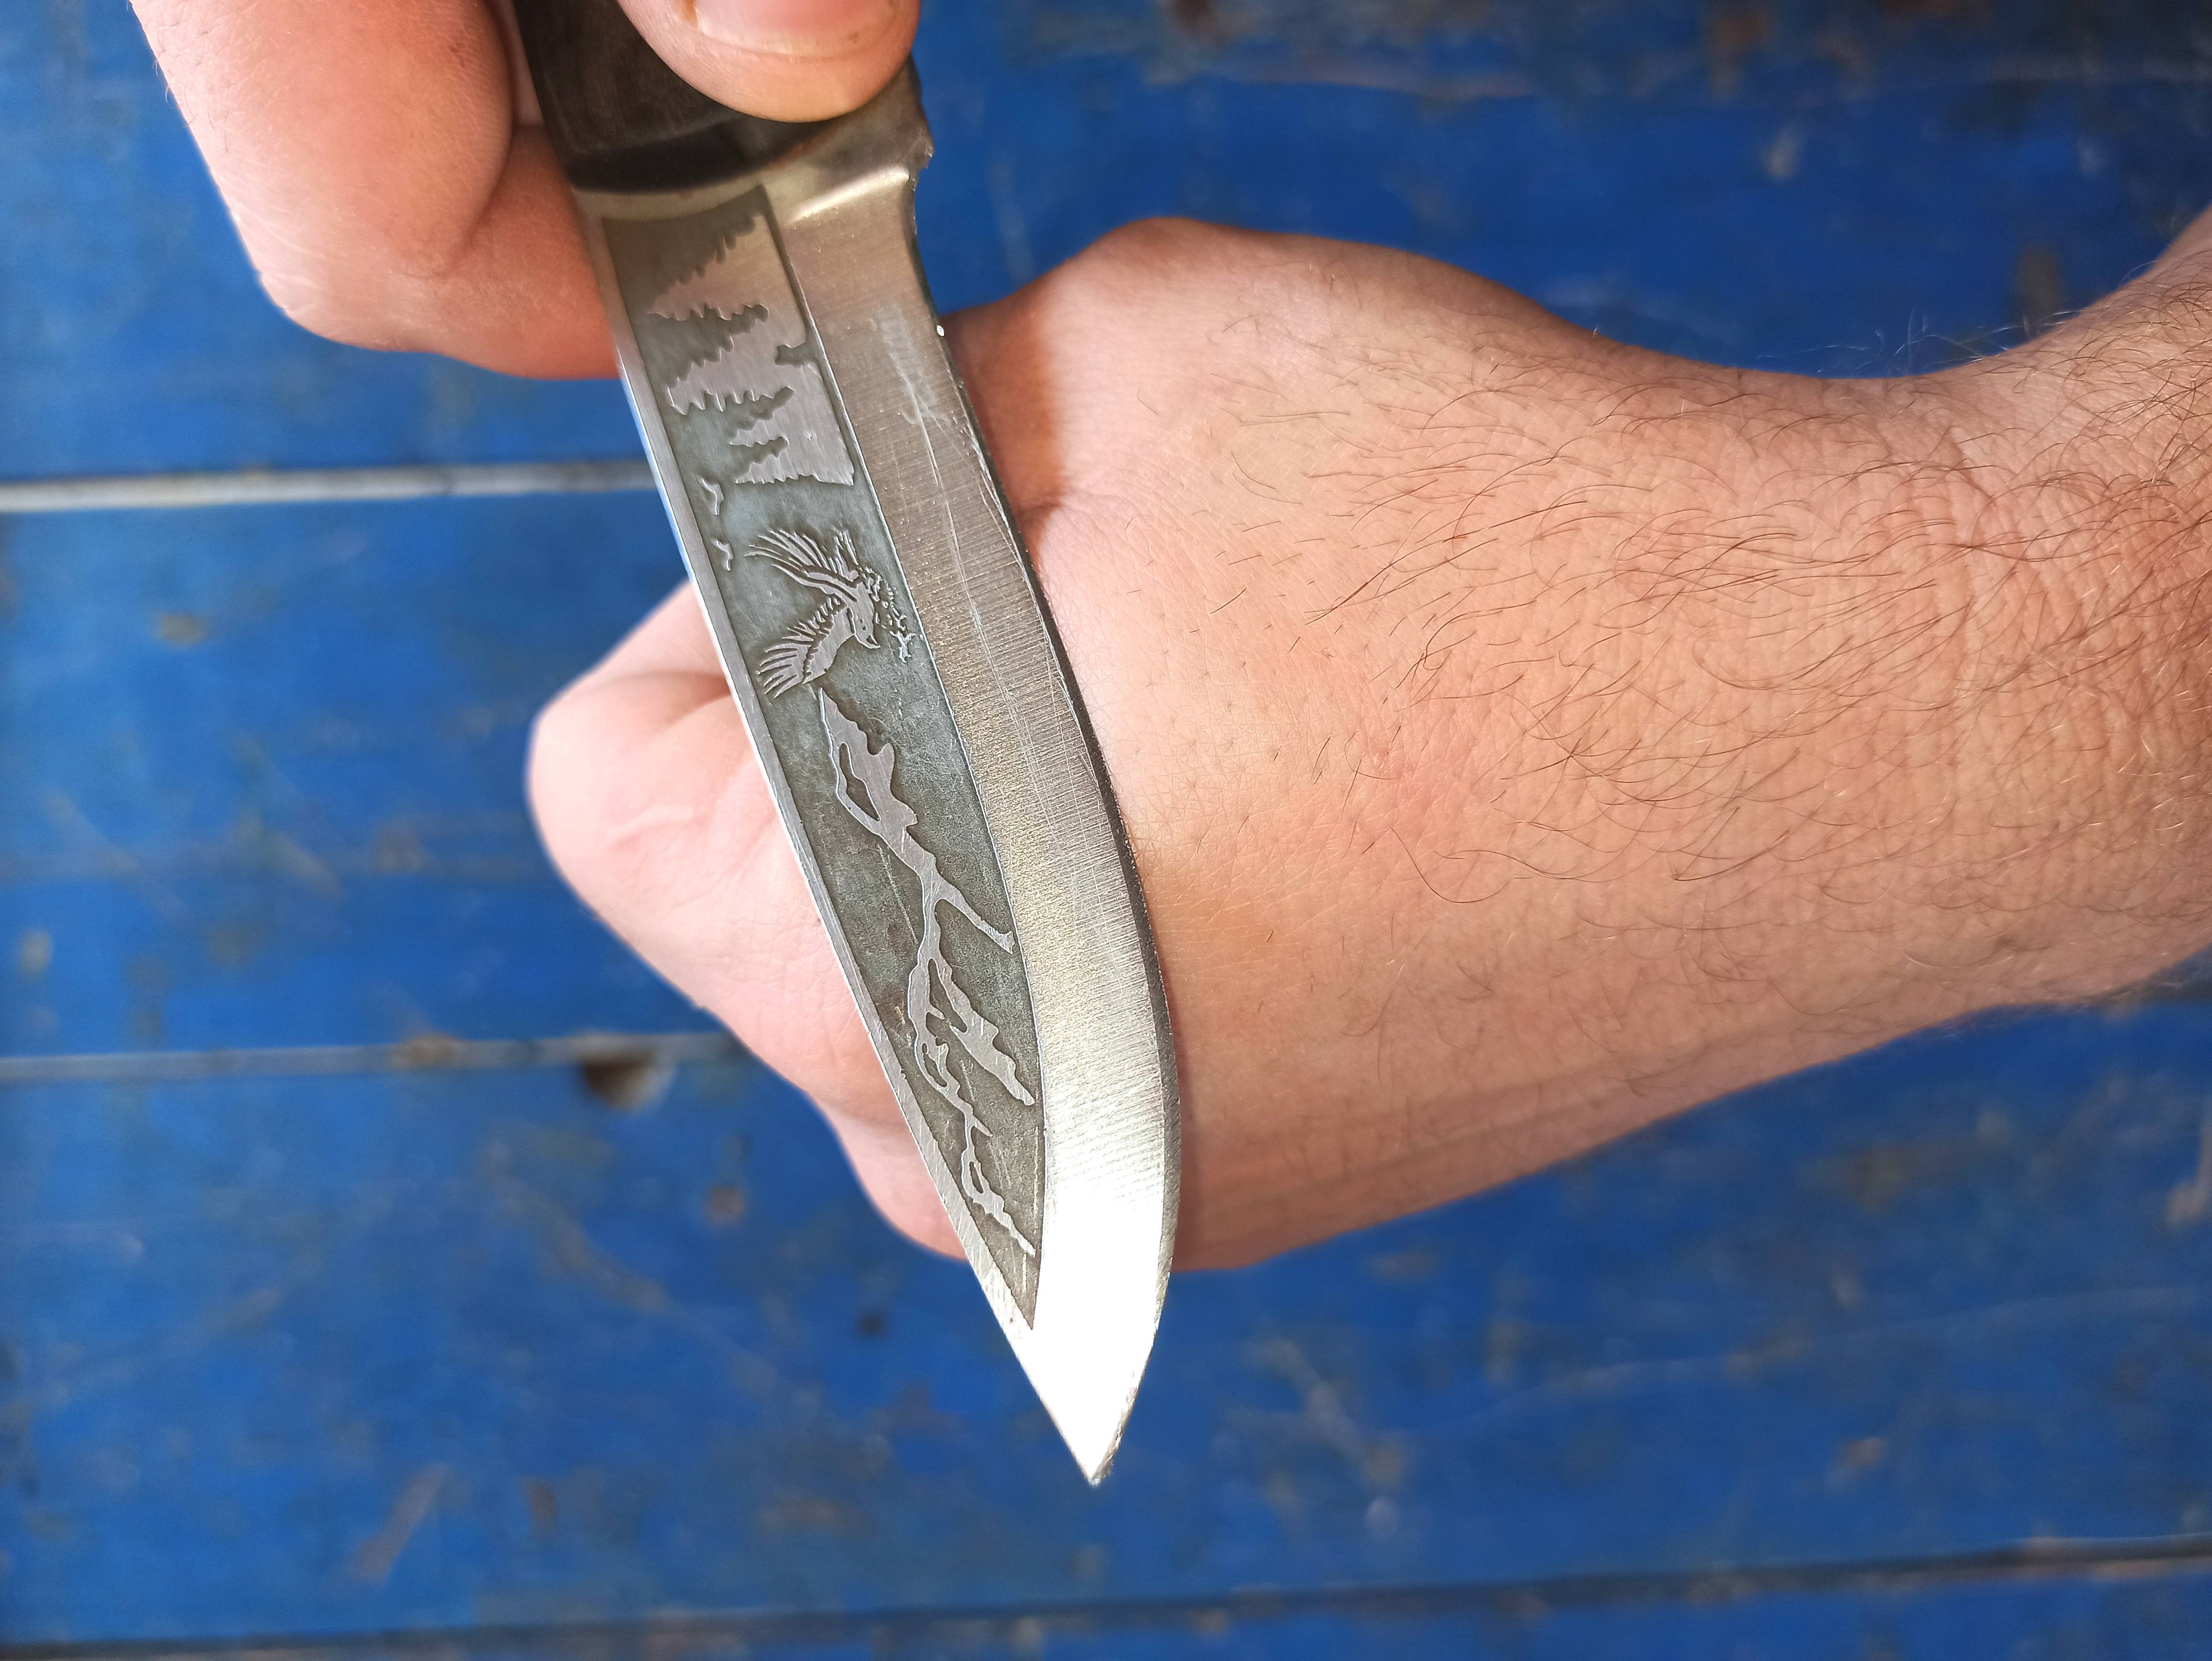 Заточка ножей: чем и как точить ножи в домашних условиях